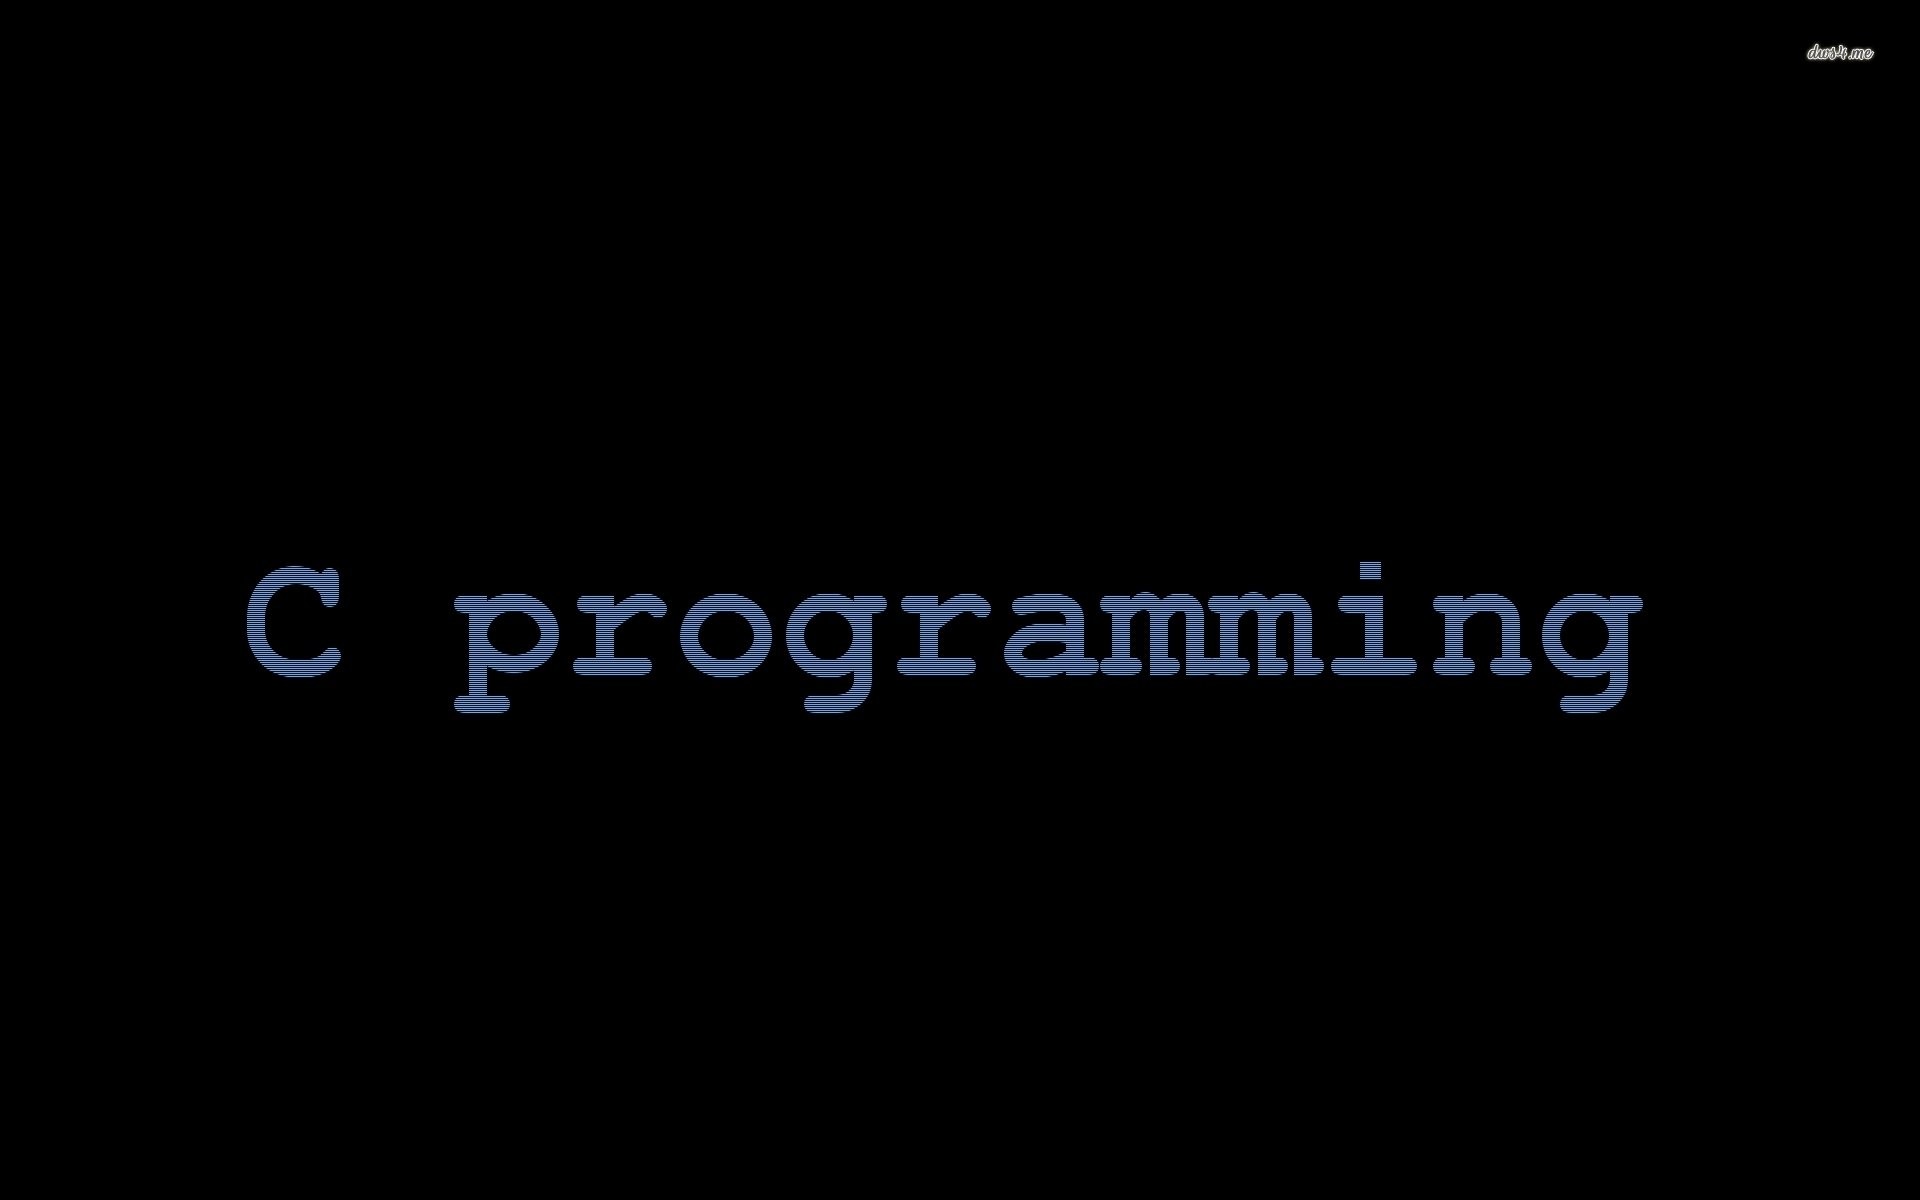 C Computer programming language